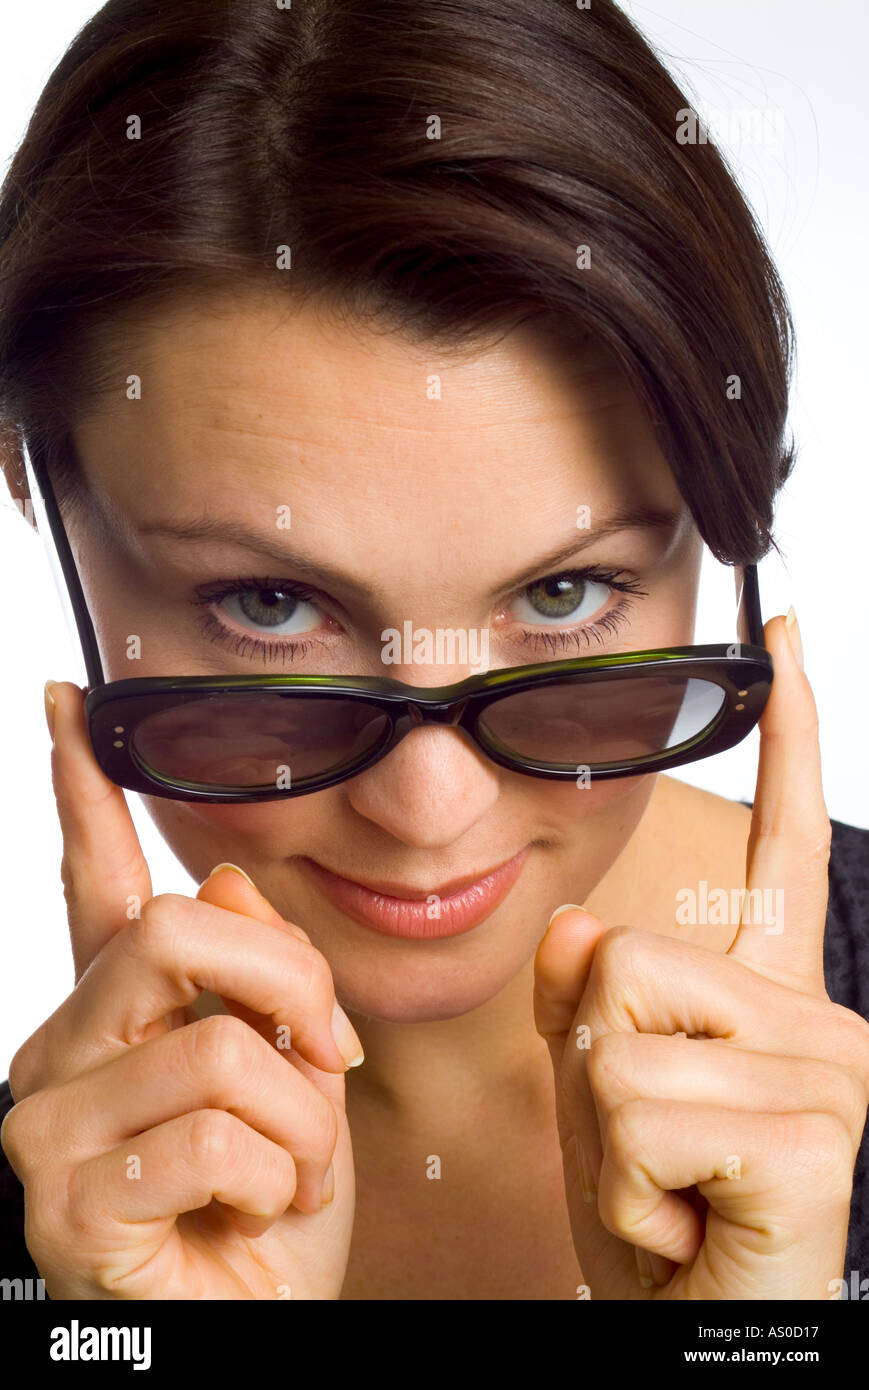 woman wearing sunglasses Stock Photo